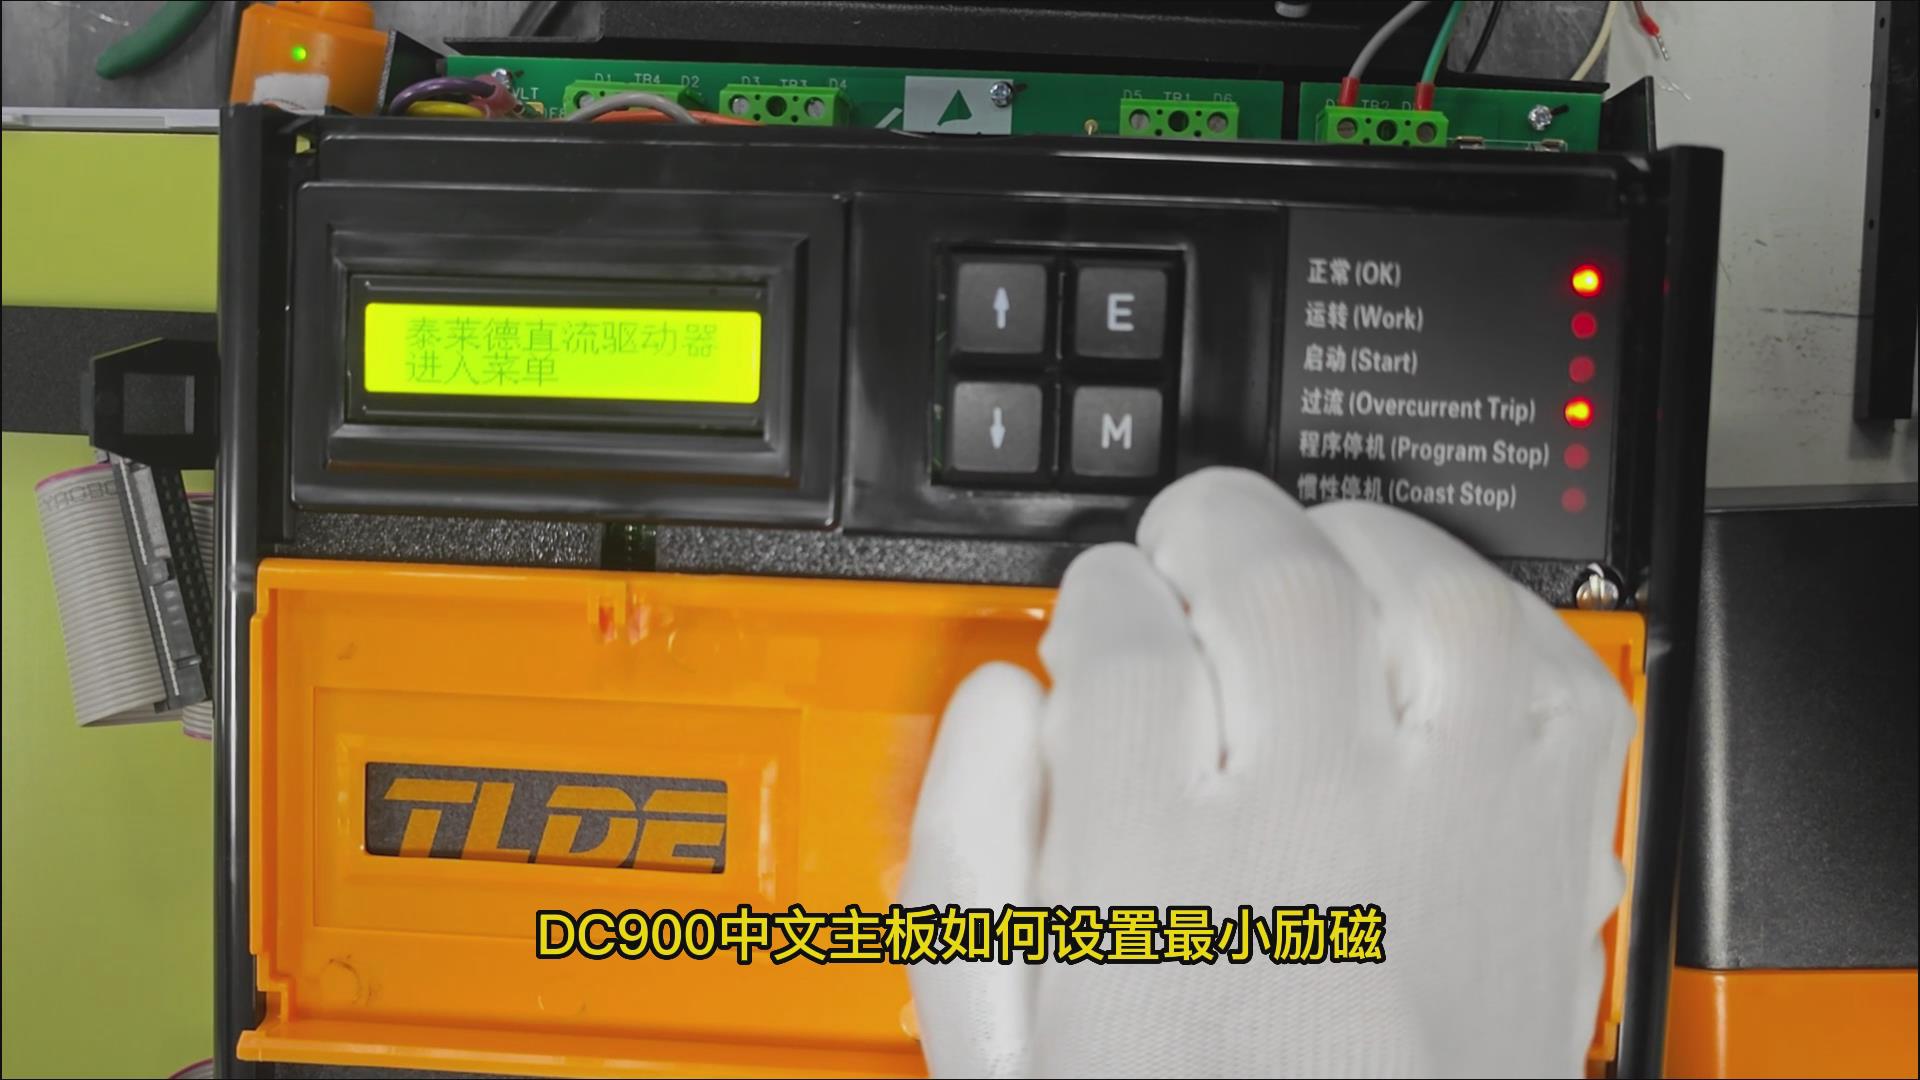 DC900C系列直流驱动器如何设置最小励磁电流？ TLDE泰莱德自动化！